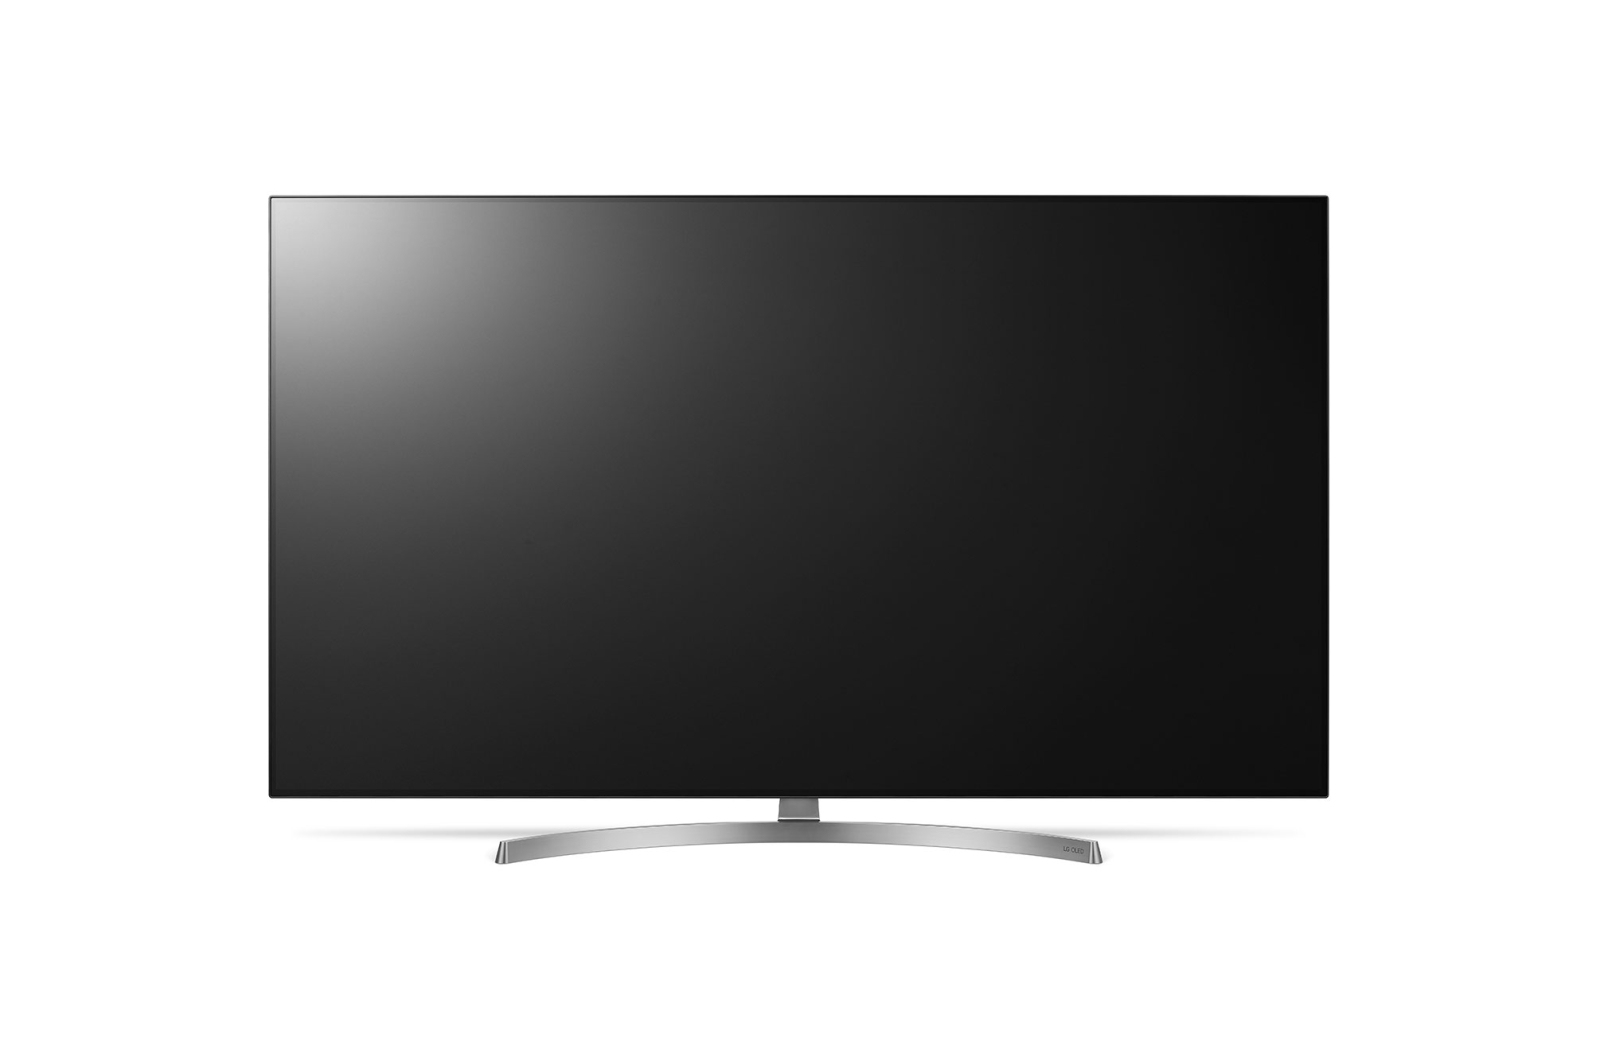 LG OLED55B8SLC TV